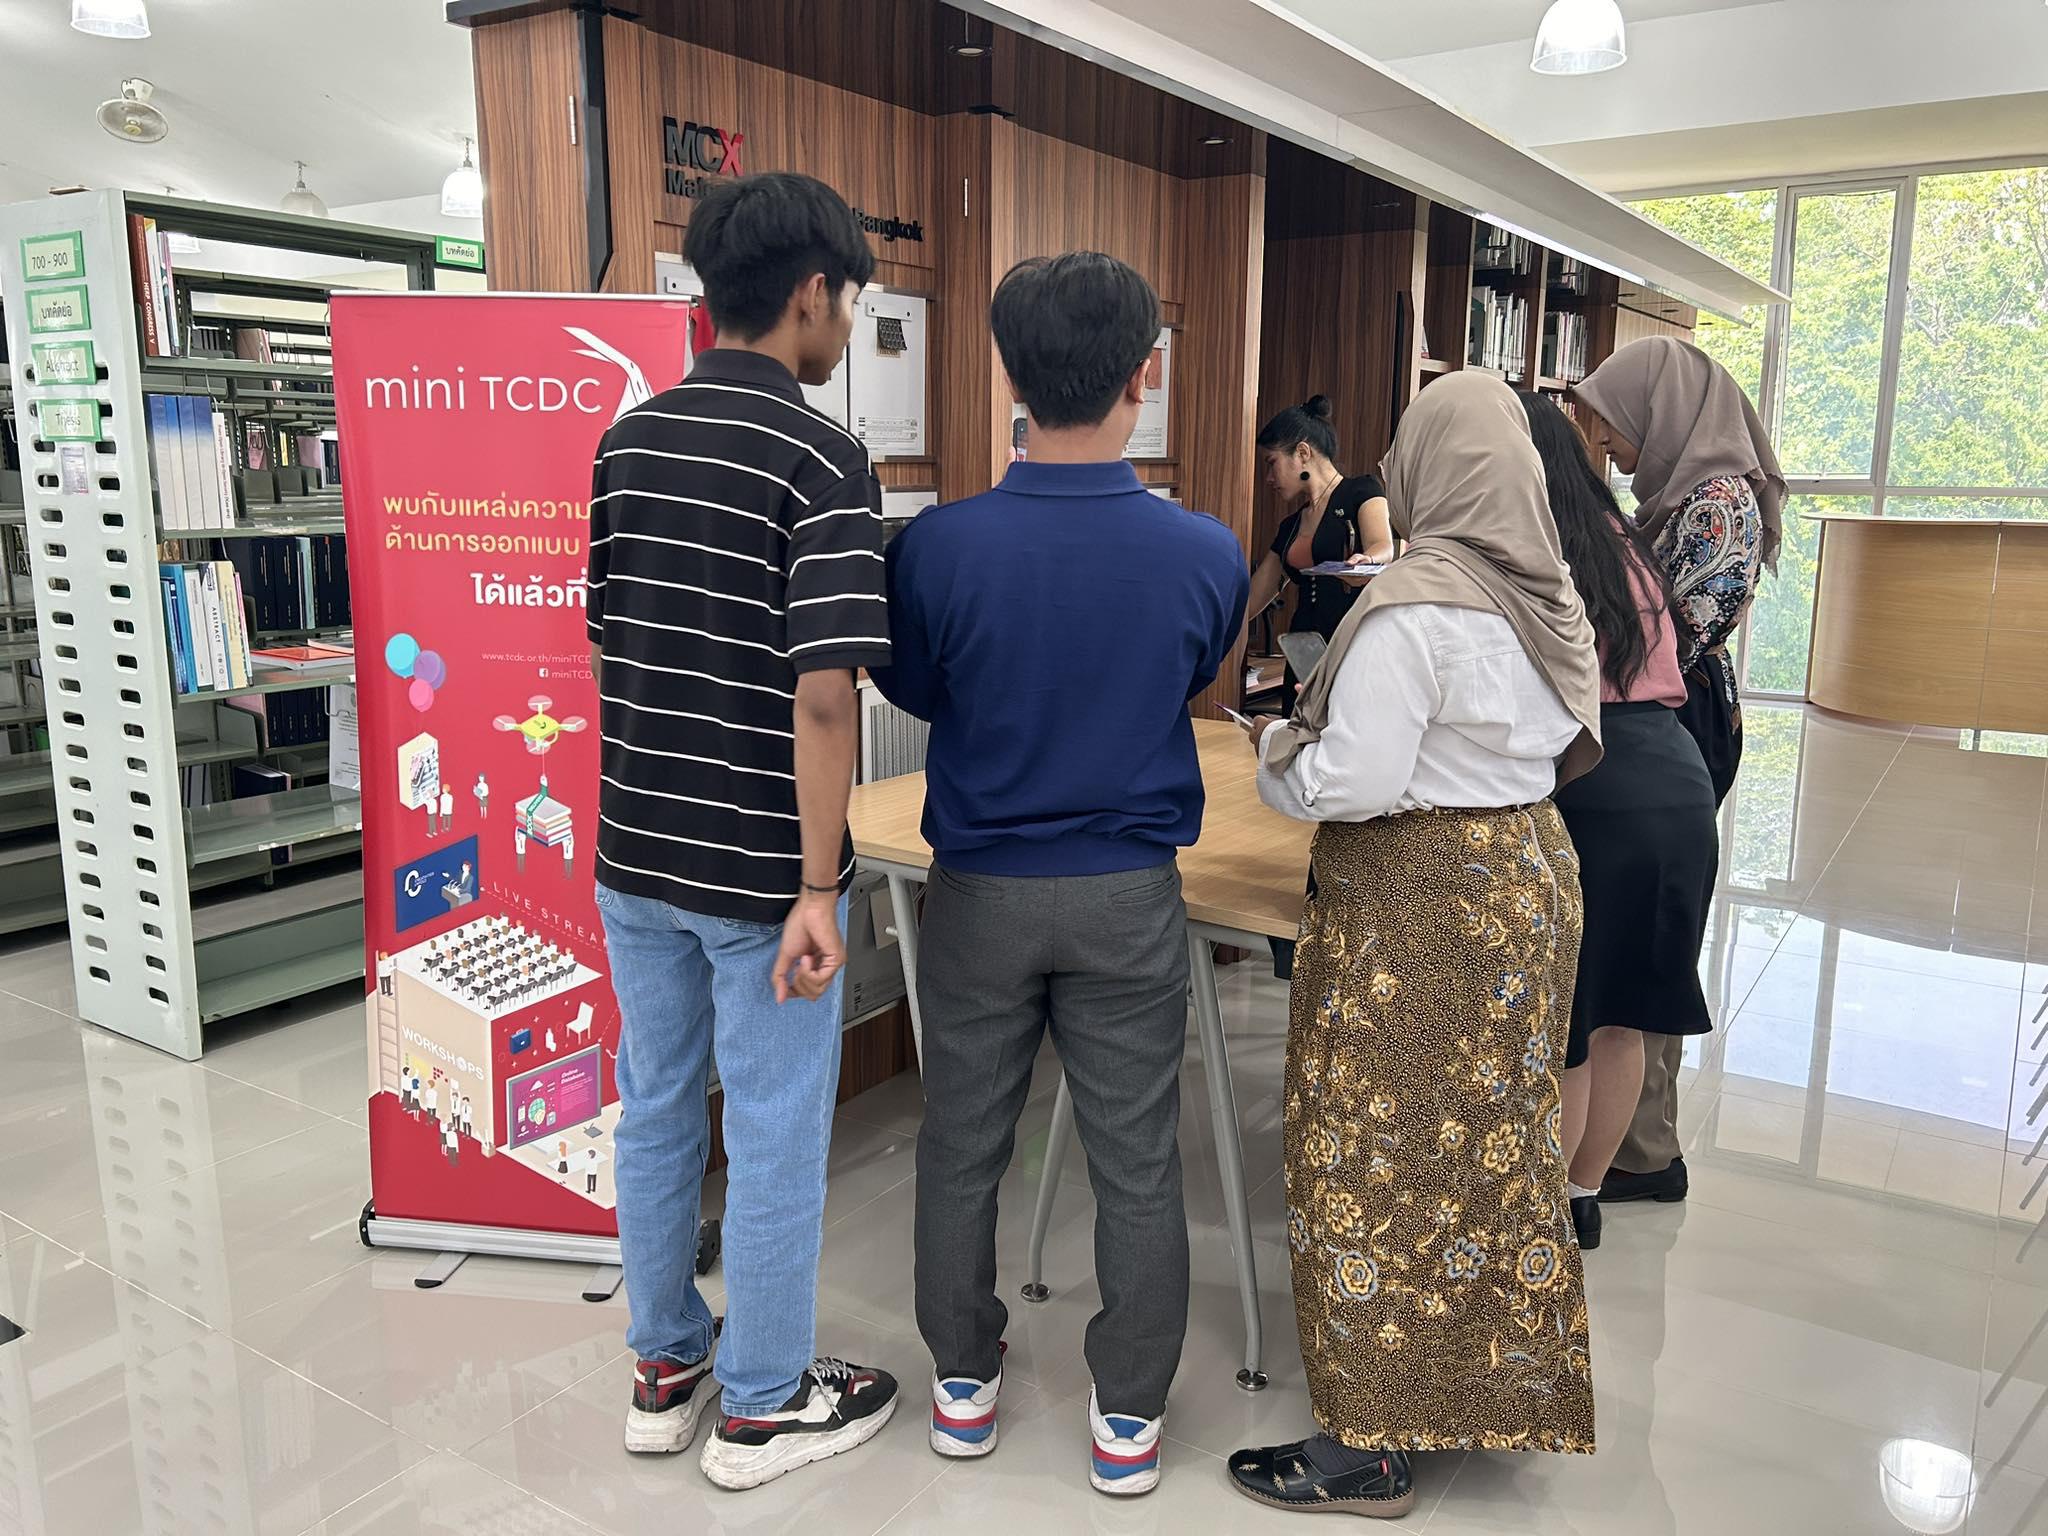 10. ต้อนรับนักศึกษาแลกเปลี่ยนจาก Universitas Negeri Surabaya ประเทศอินโดนีเซีย เยี่ยมชมสำนักวิทยบริการและเทคโนโลยีสารสนเทศ มหาวิทยาลัยราชภัฏกำแพงเพชร